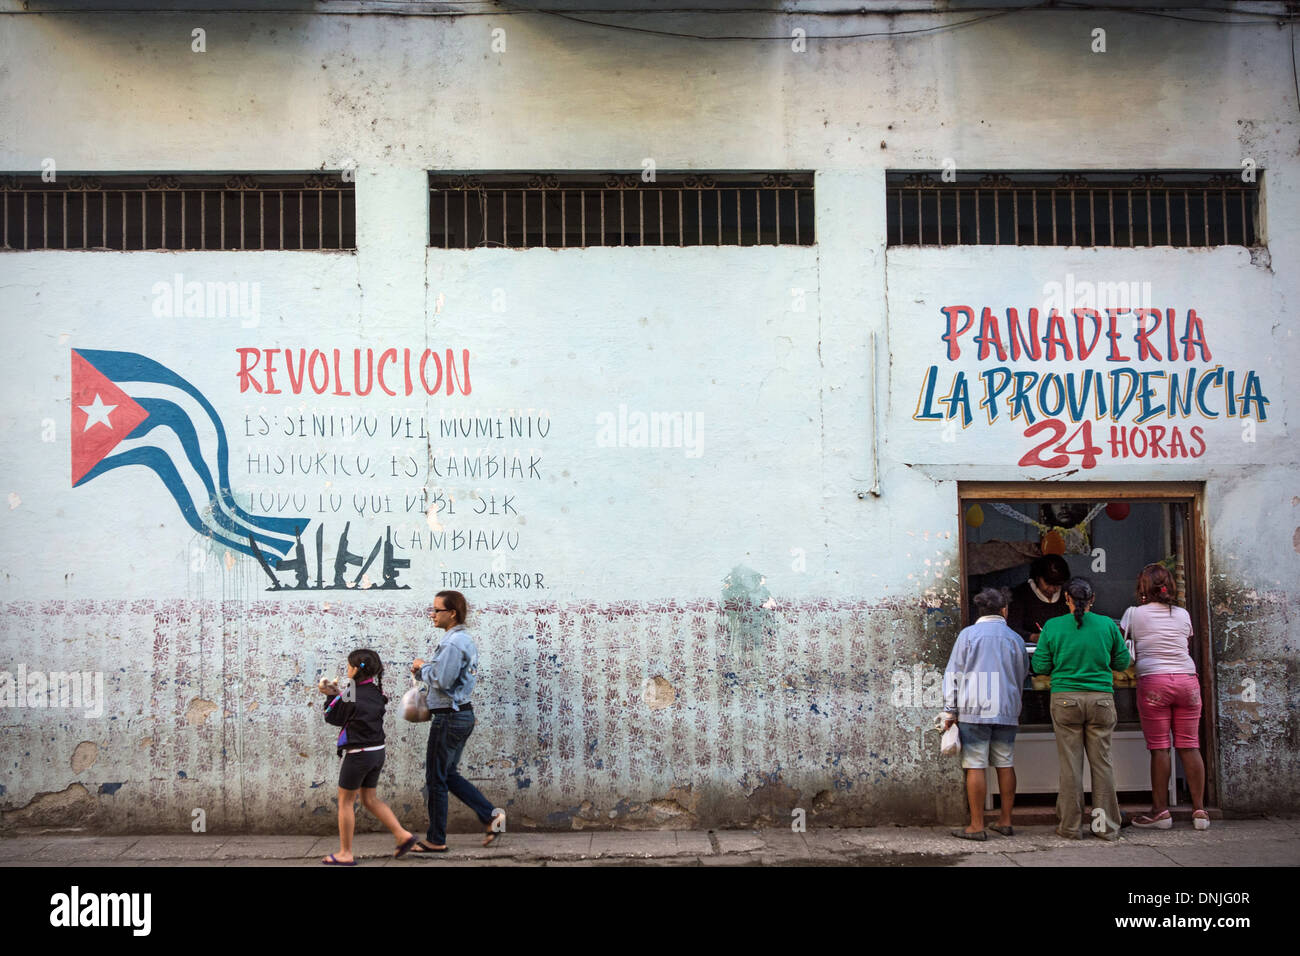 GRAFFITI POLITIQUES À propos de la révolution cubaine (REVOLUCION) SUR LE MUR D'UNE PANADERIA BOULANGERIE, DE L'ÉTAT D'ACCEPTER DES CARTES DE RATIONNEMENT, scène de rue et la vie quotidienne, LA HAVANE, CUBA, LES CARAÏBES Banque D'Images